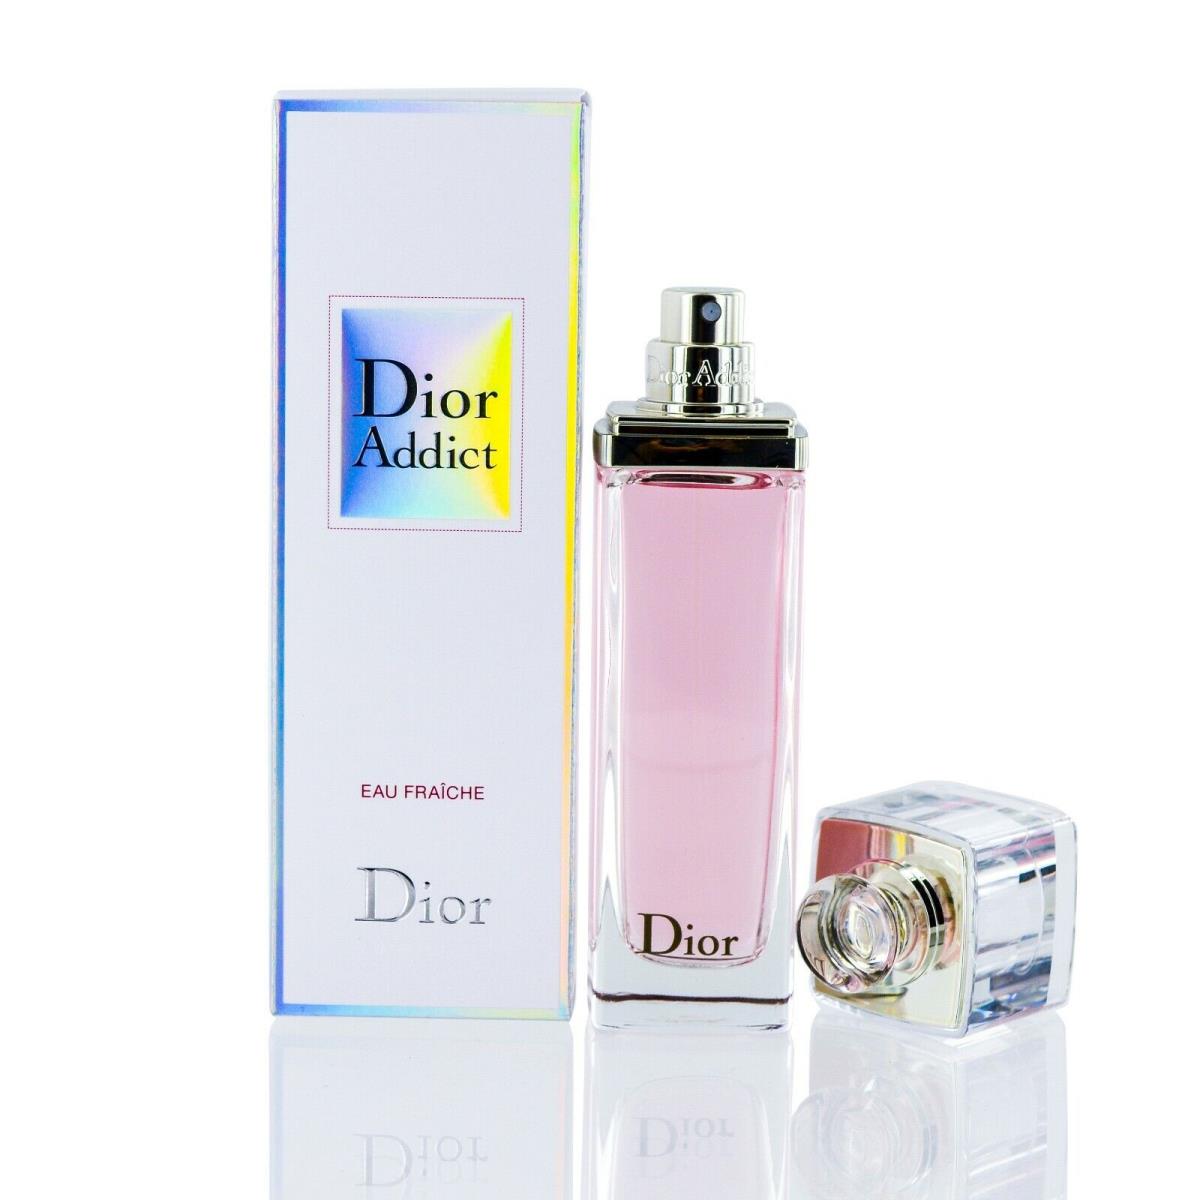 Christian Dior Addict Edt Eau Fraiche Spray For Women 1.7 Oz Packaging-nib